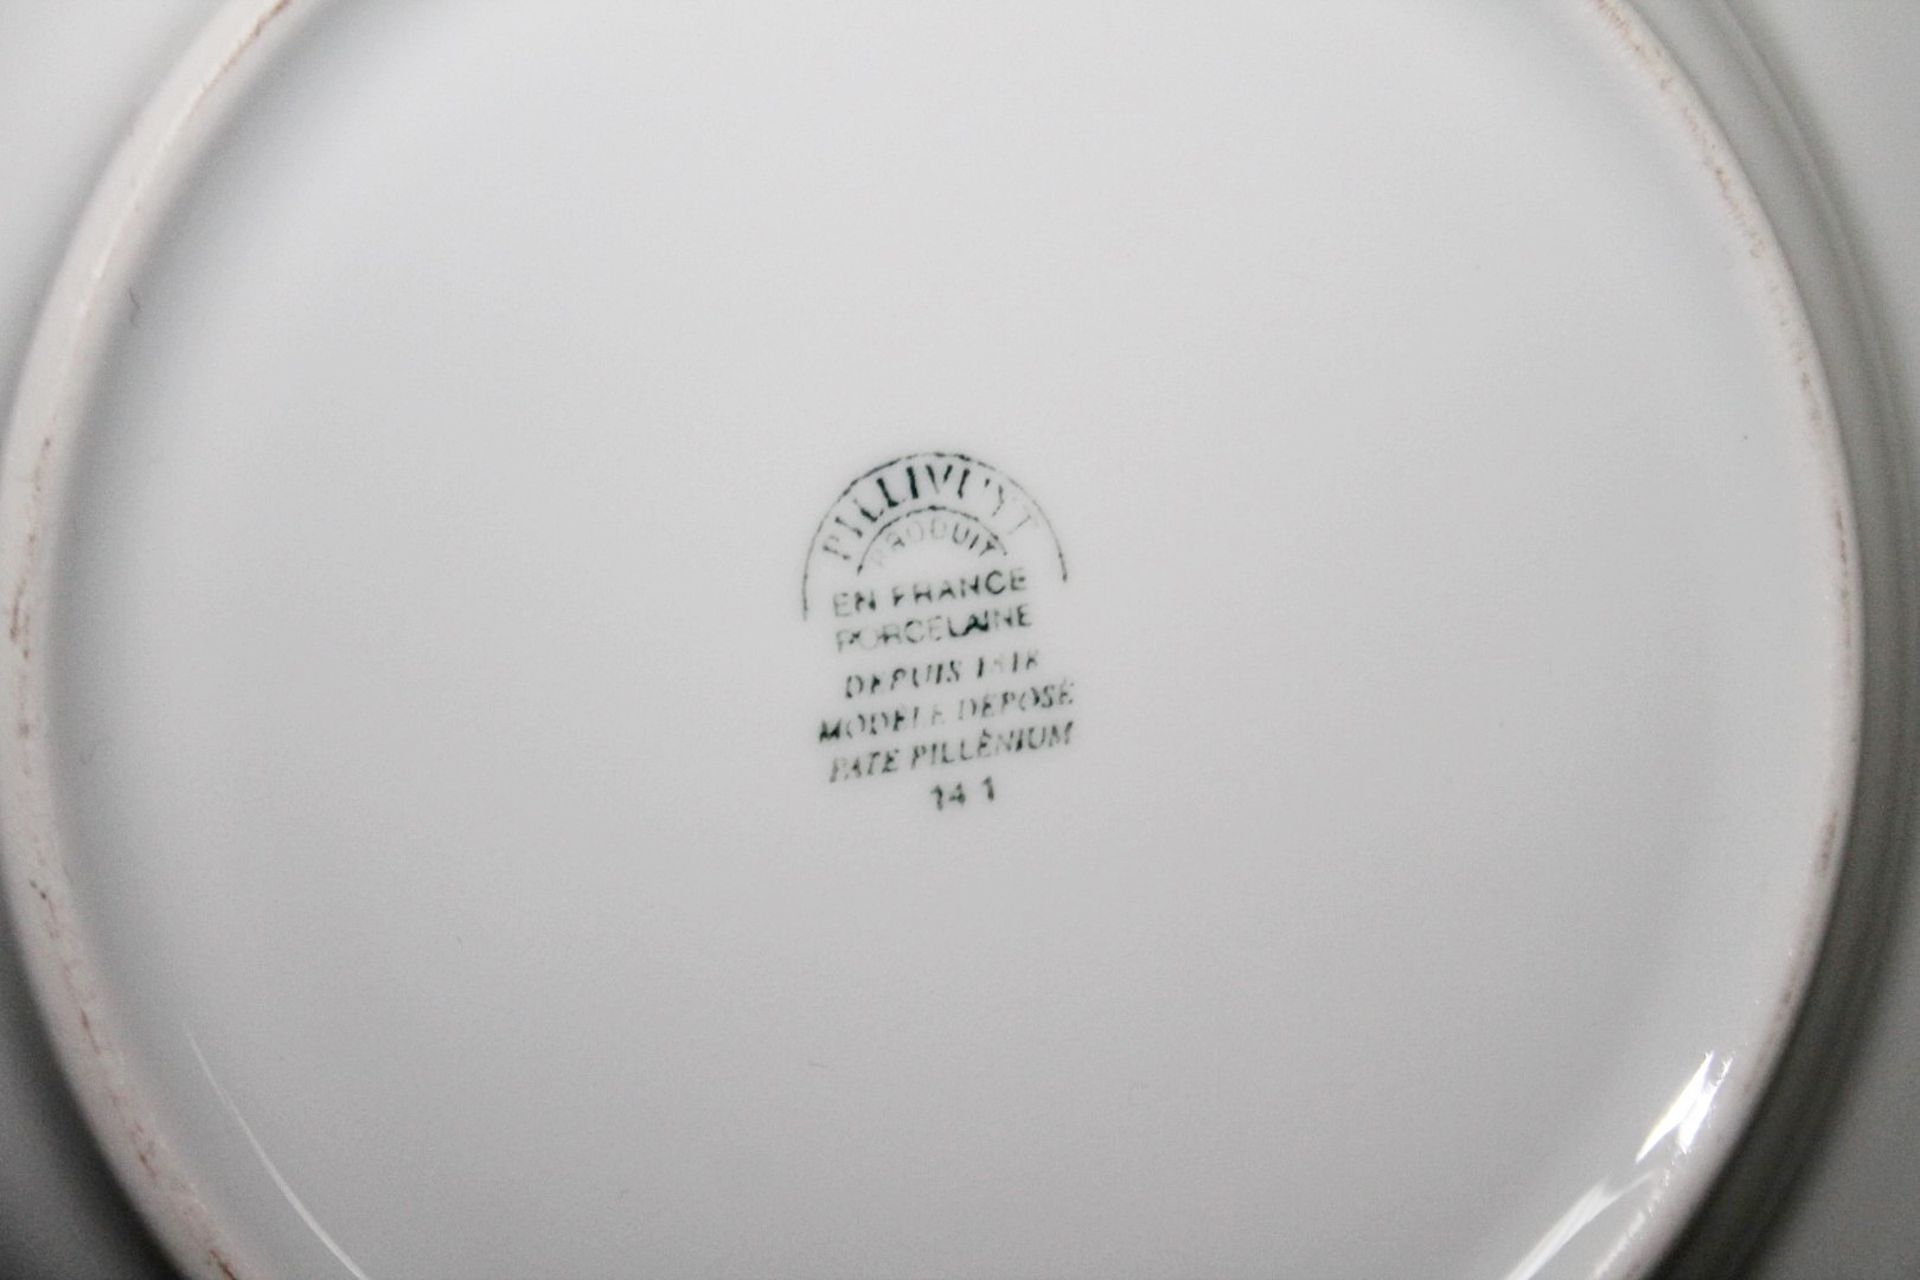 40 x PILLIVUYT Porcelain 21.7cm Small Commercial Porcelain Pasta / Soup Bowls With 'Famous Branding' - Image 5 of 5